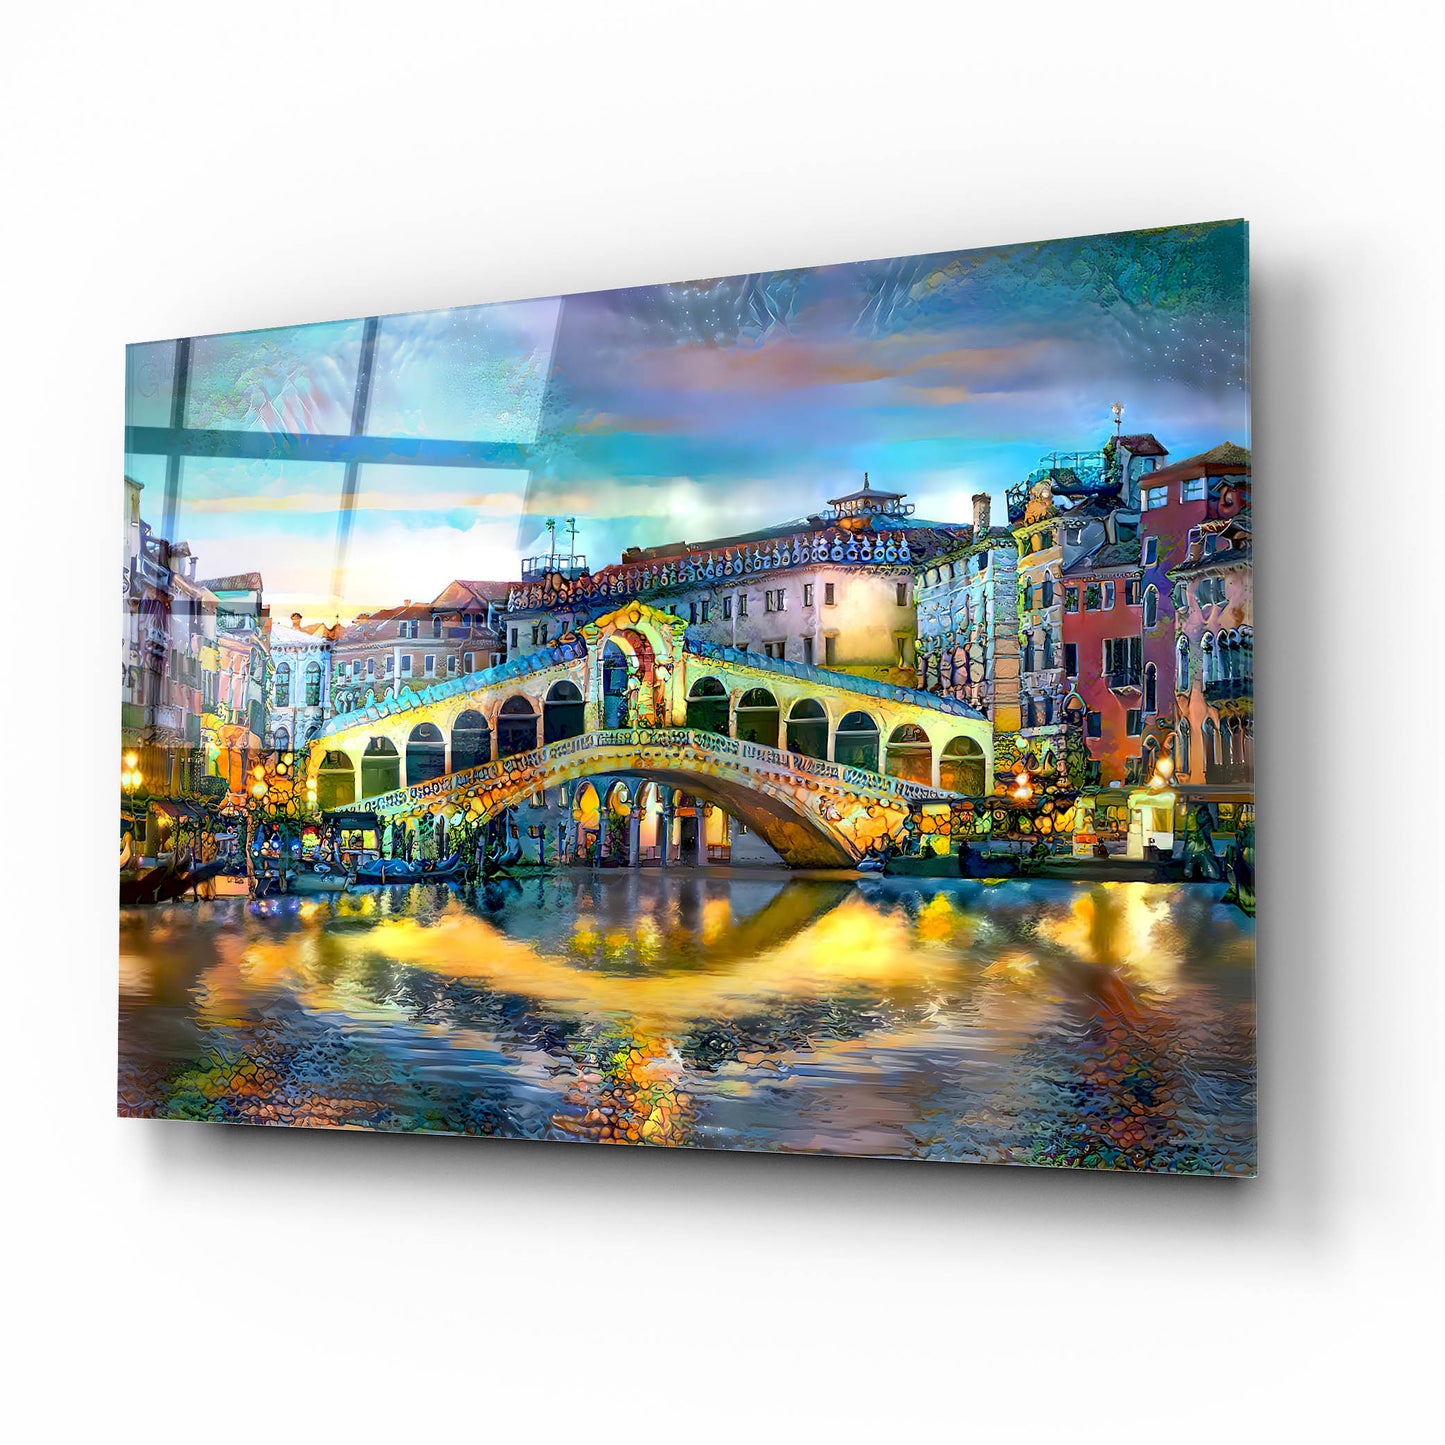 Epic Art 'Venice Italy Rialto Bridge at night' by Pedro Gavidia, Acrylic Glass Wall Art,16x12